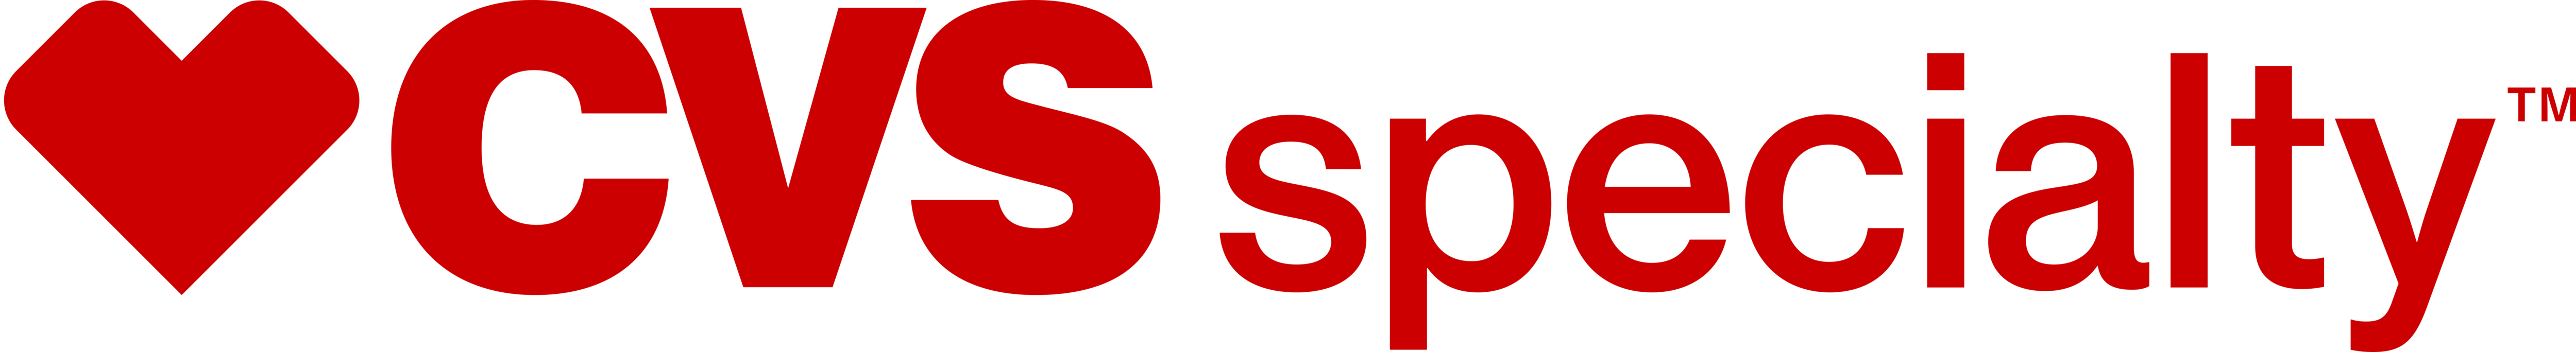 CVS Specialty logo